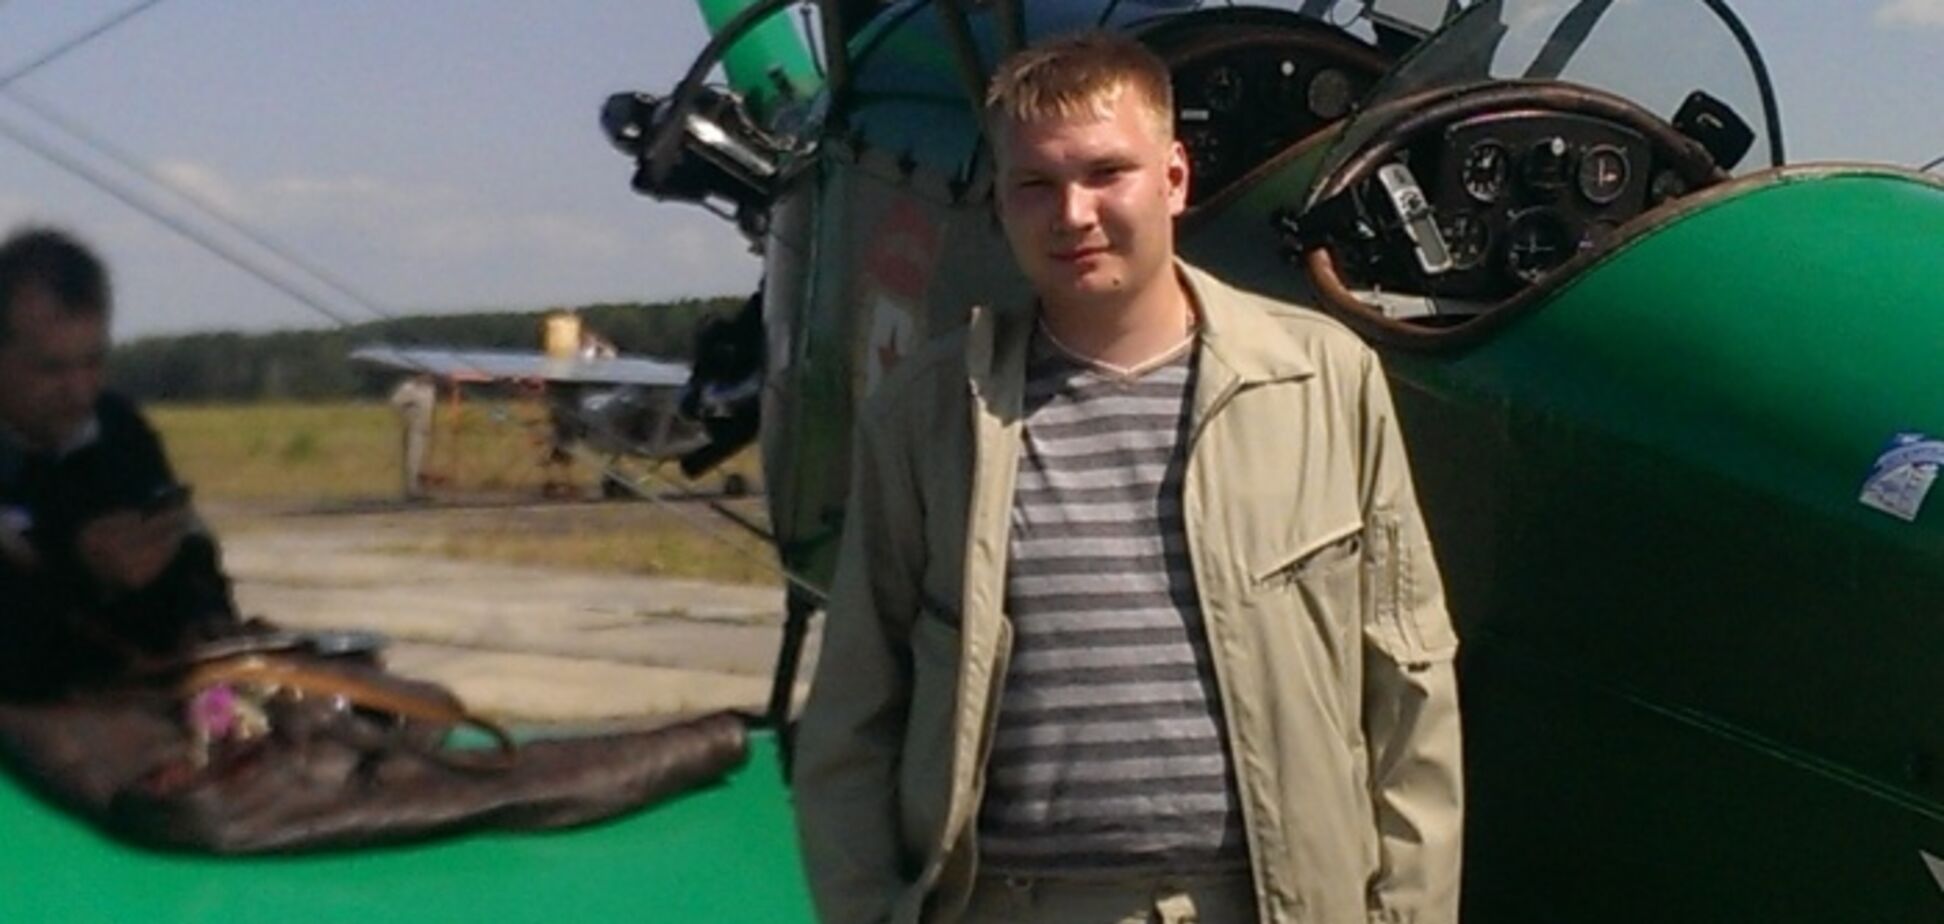 Погибший пилот Андрей Кононов. Ему было 32 года